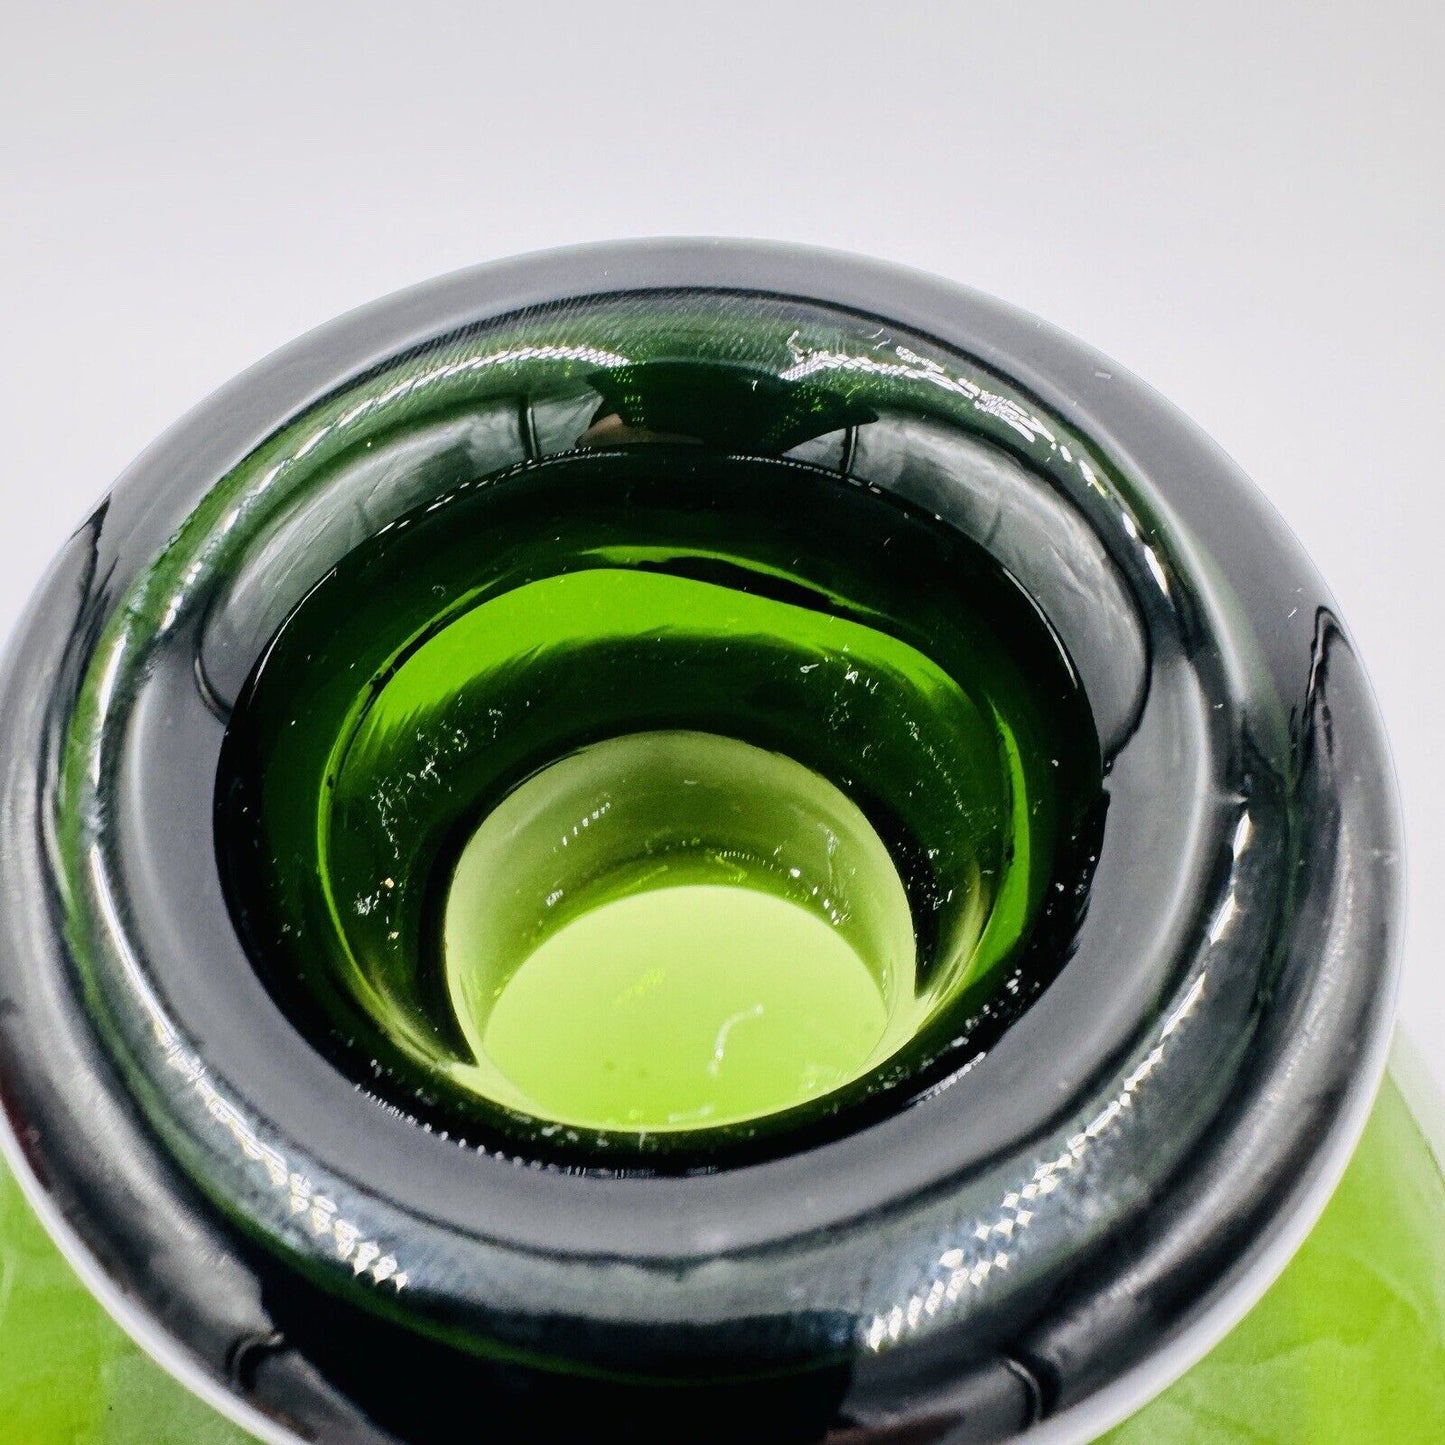 MCM Green Olive Decanter Large Rare Vintage 9.5” Bottle Collection